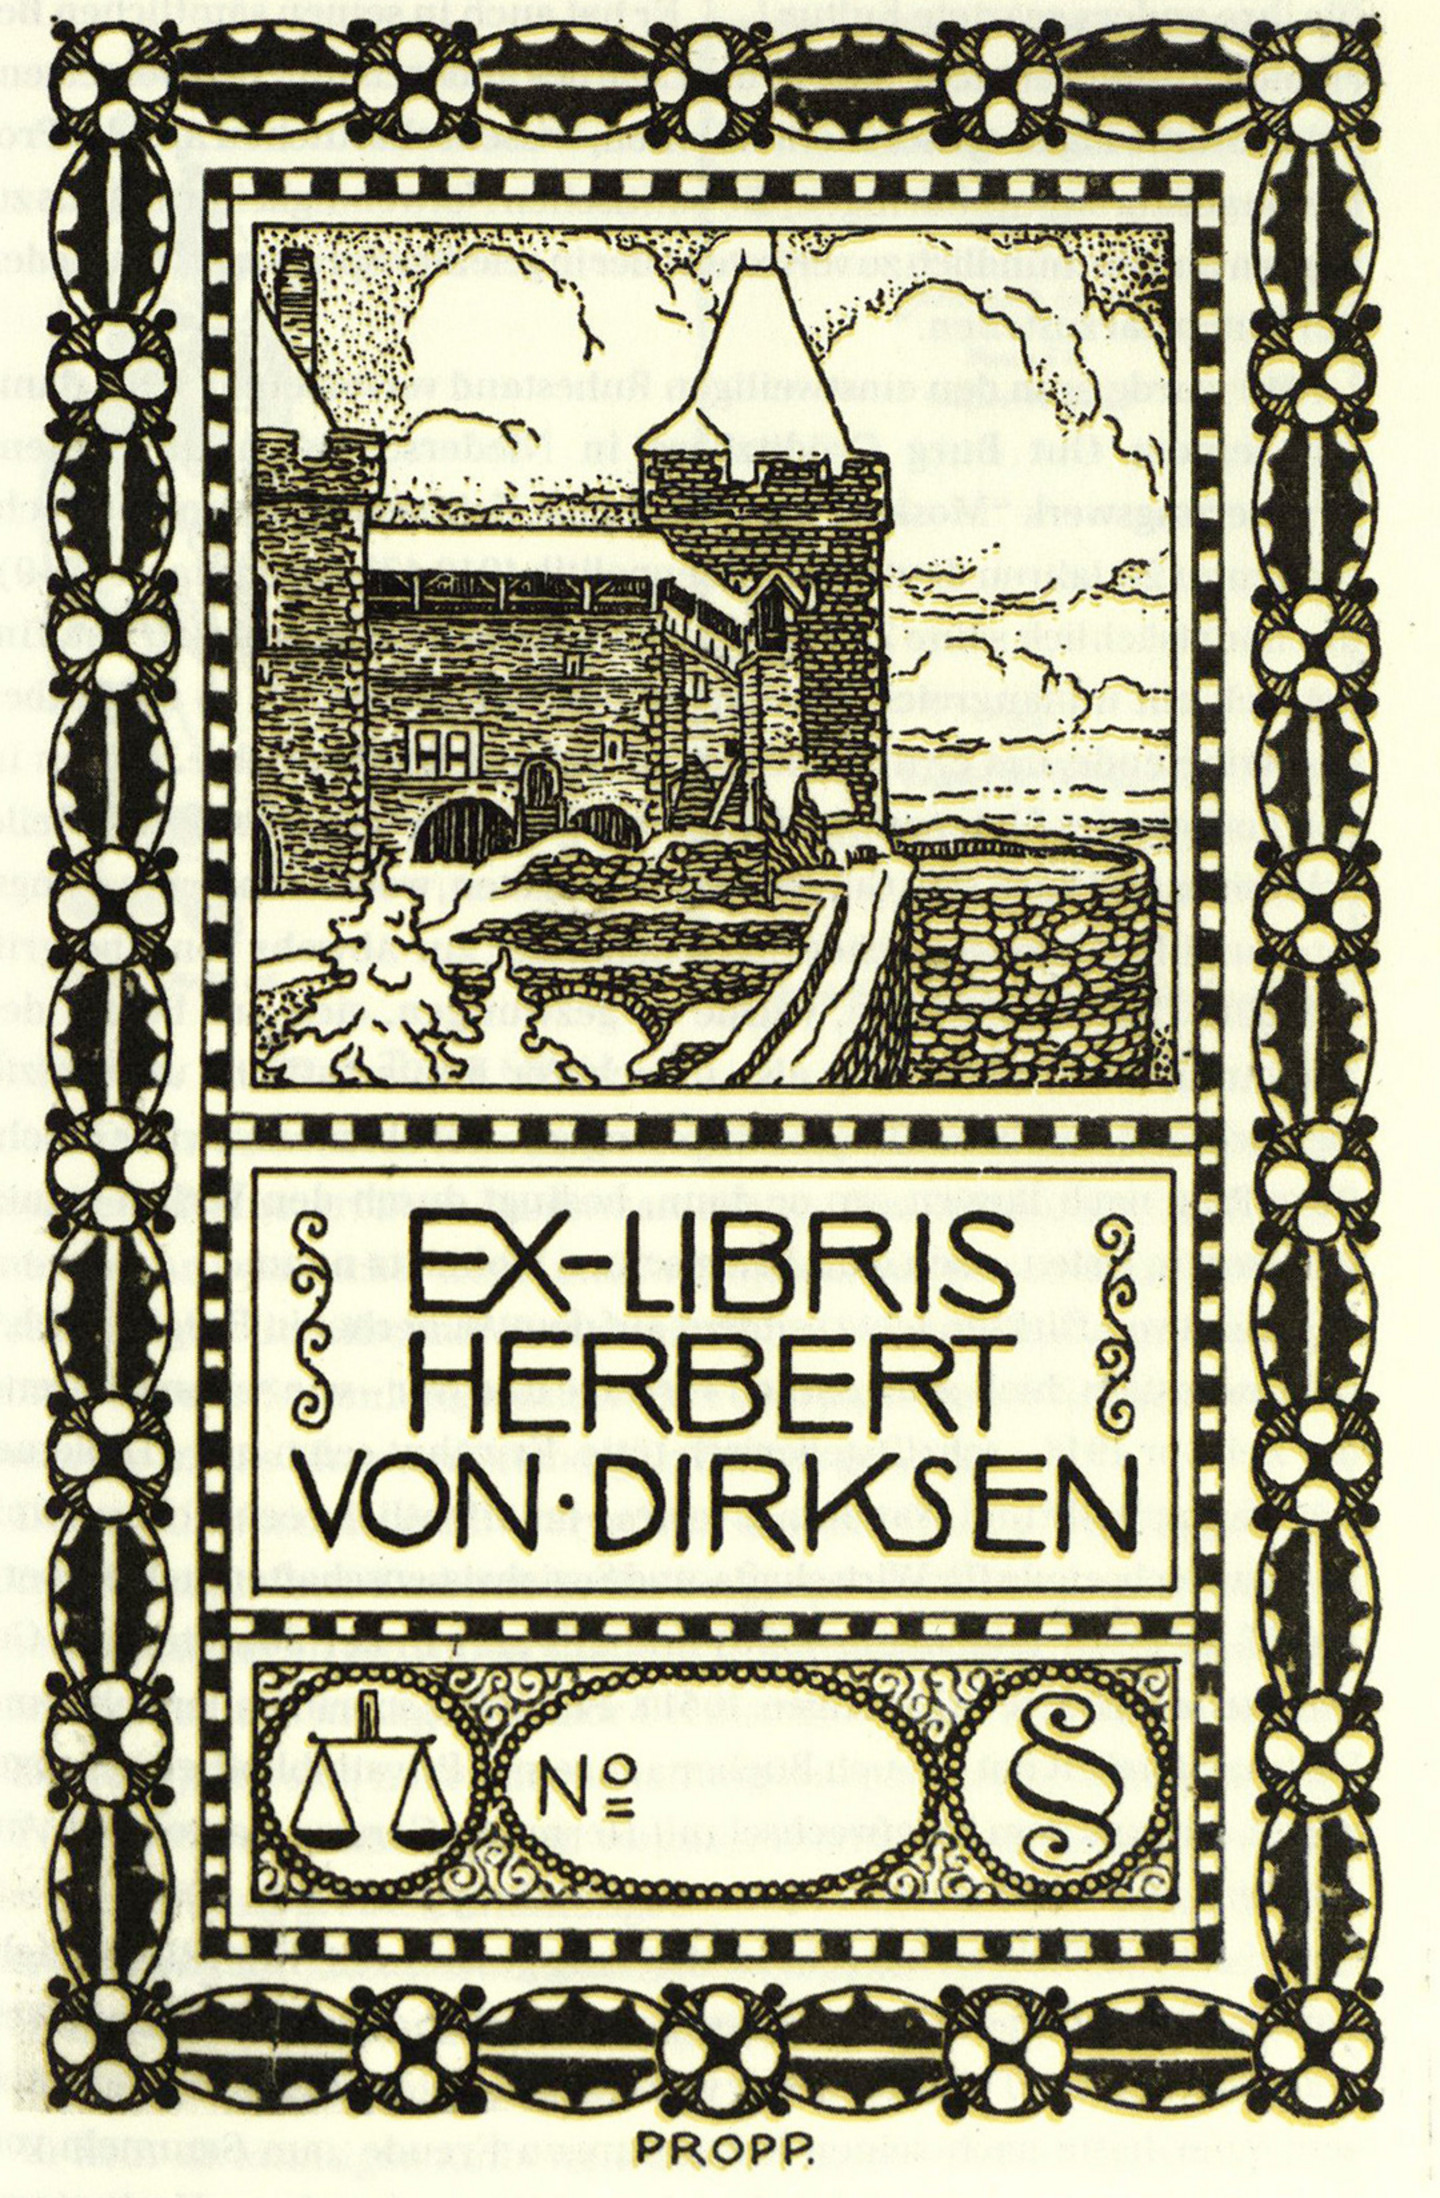 Eine Abbildung den Eigentumsstempels von Herbert von Dirksen mit einer Zeichnung einer Burg und juristischen Symbolen.